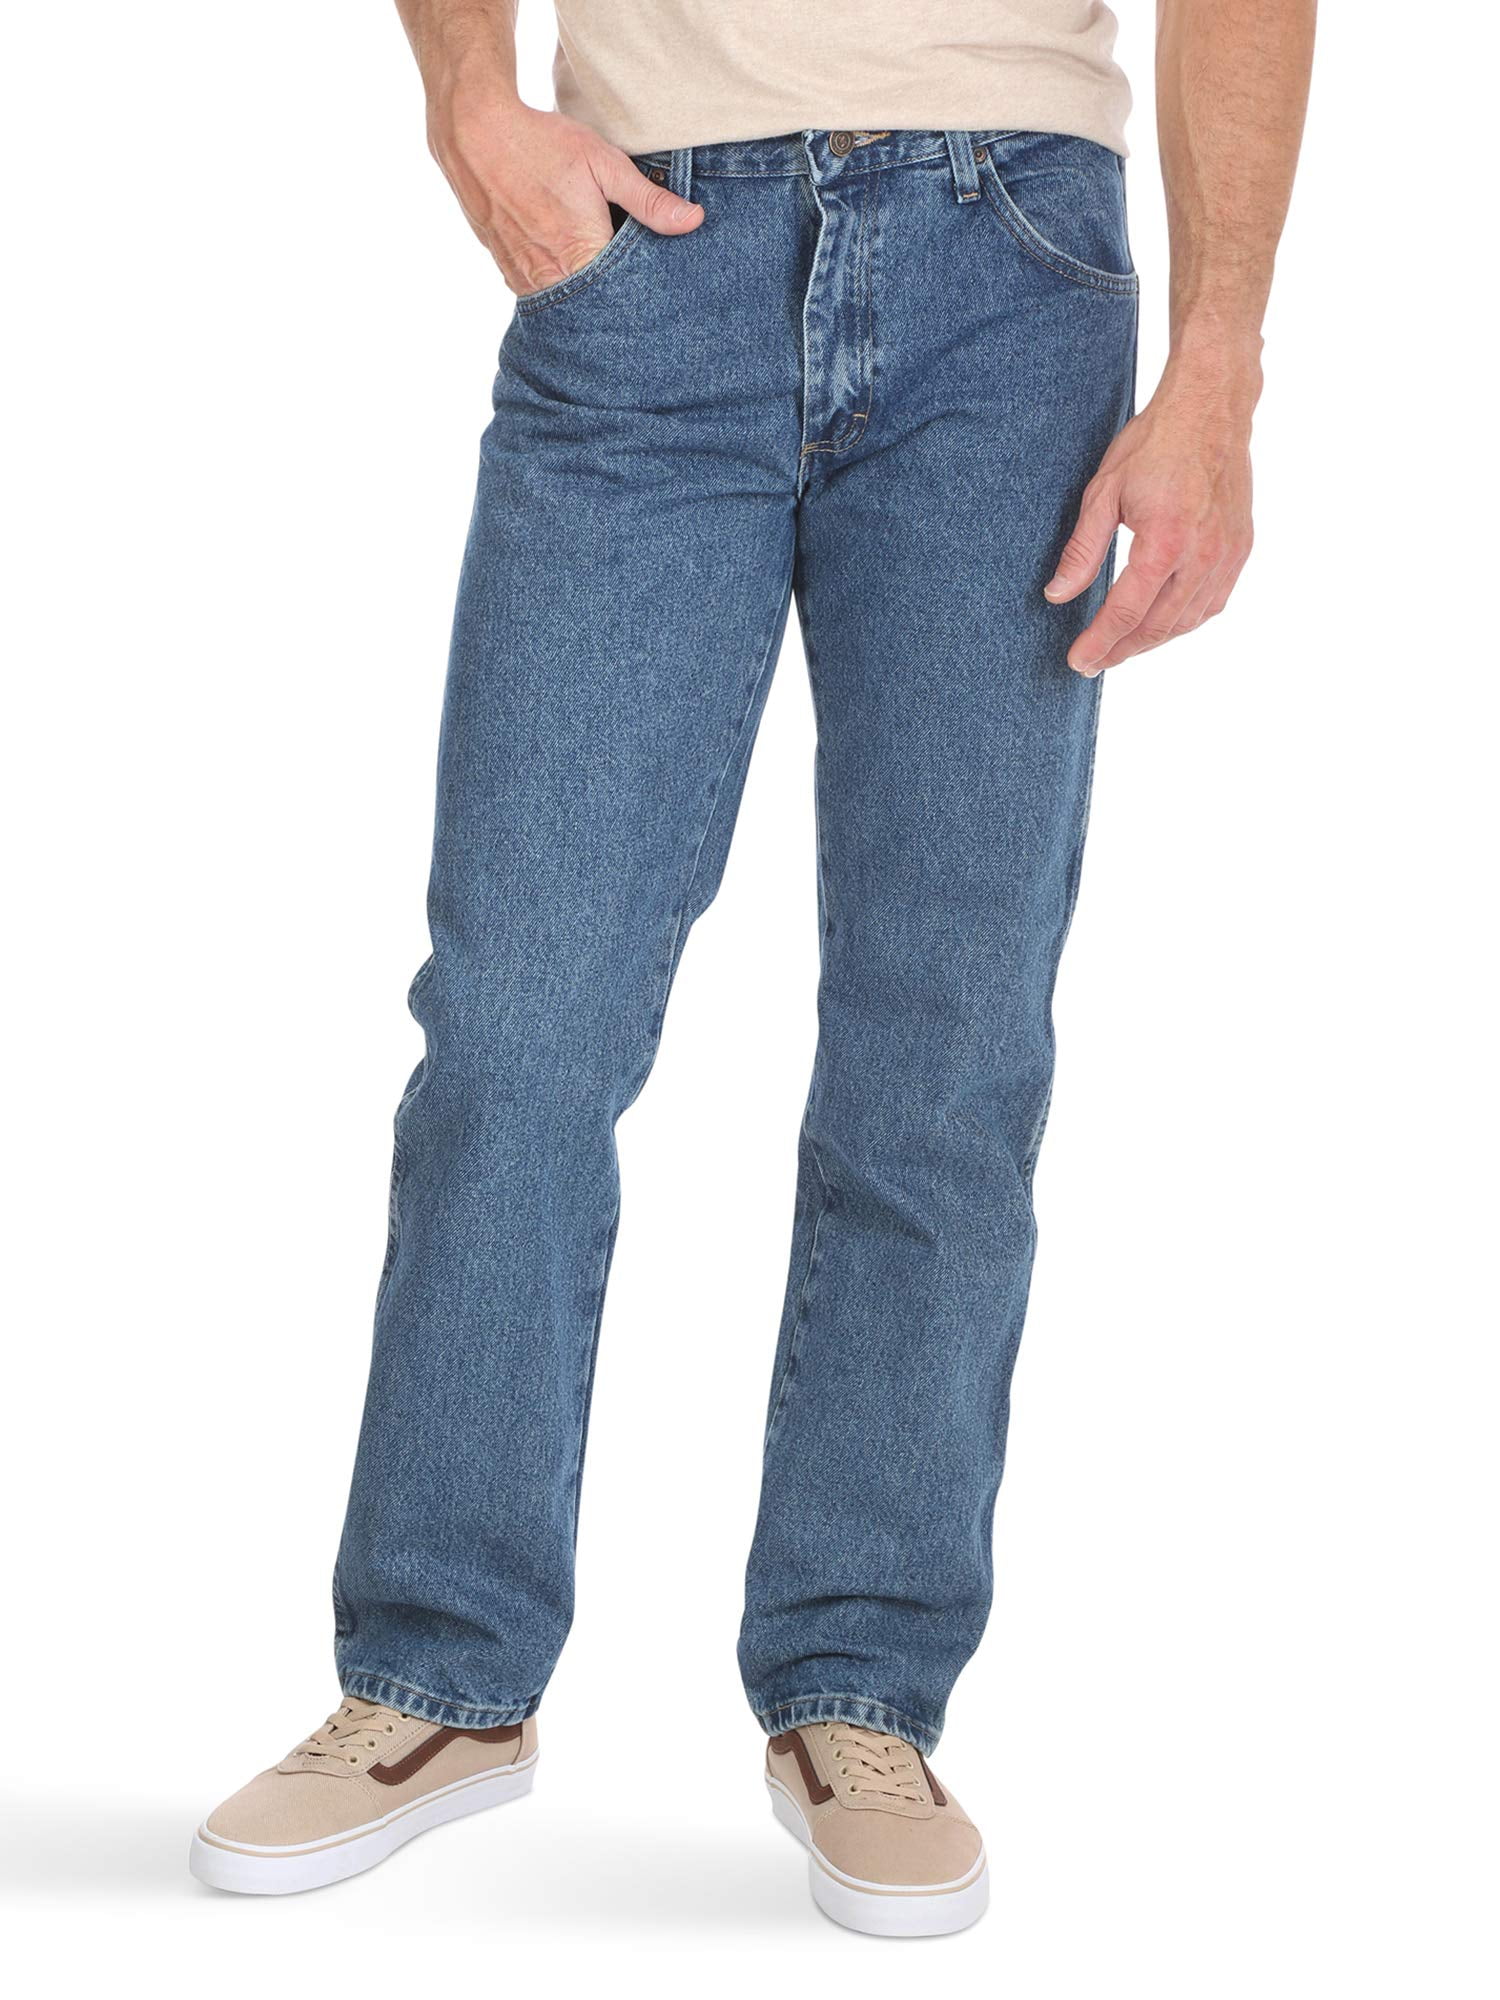 Wrangler - Wrangler Mens 40x29 Regular-Fit Straight Leg Flex Jeans ...